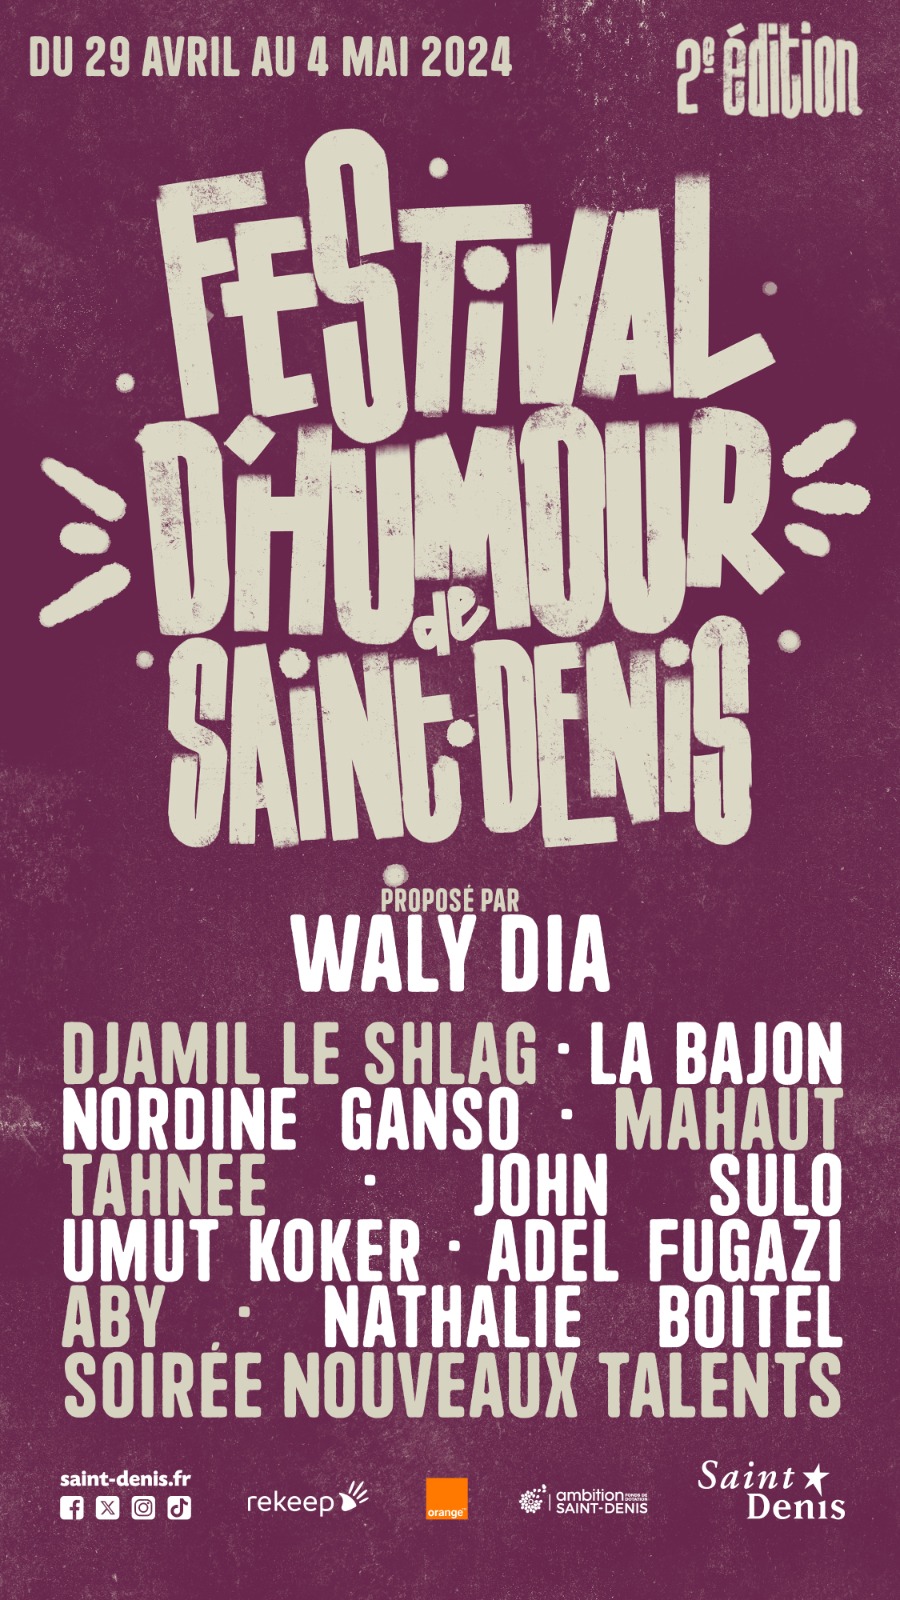 La deuxième édition du Festival d’Humour de Saint-Denis proposé par Waly Dia